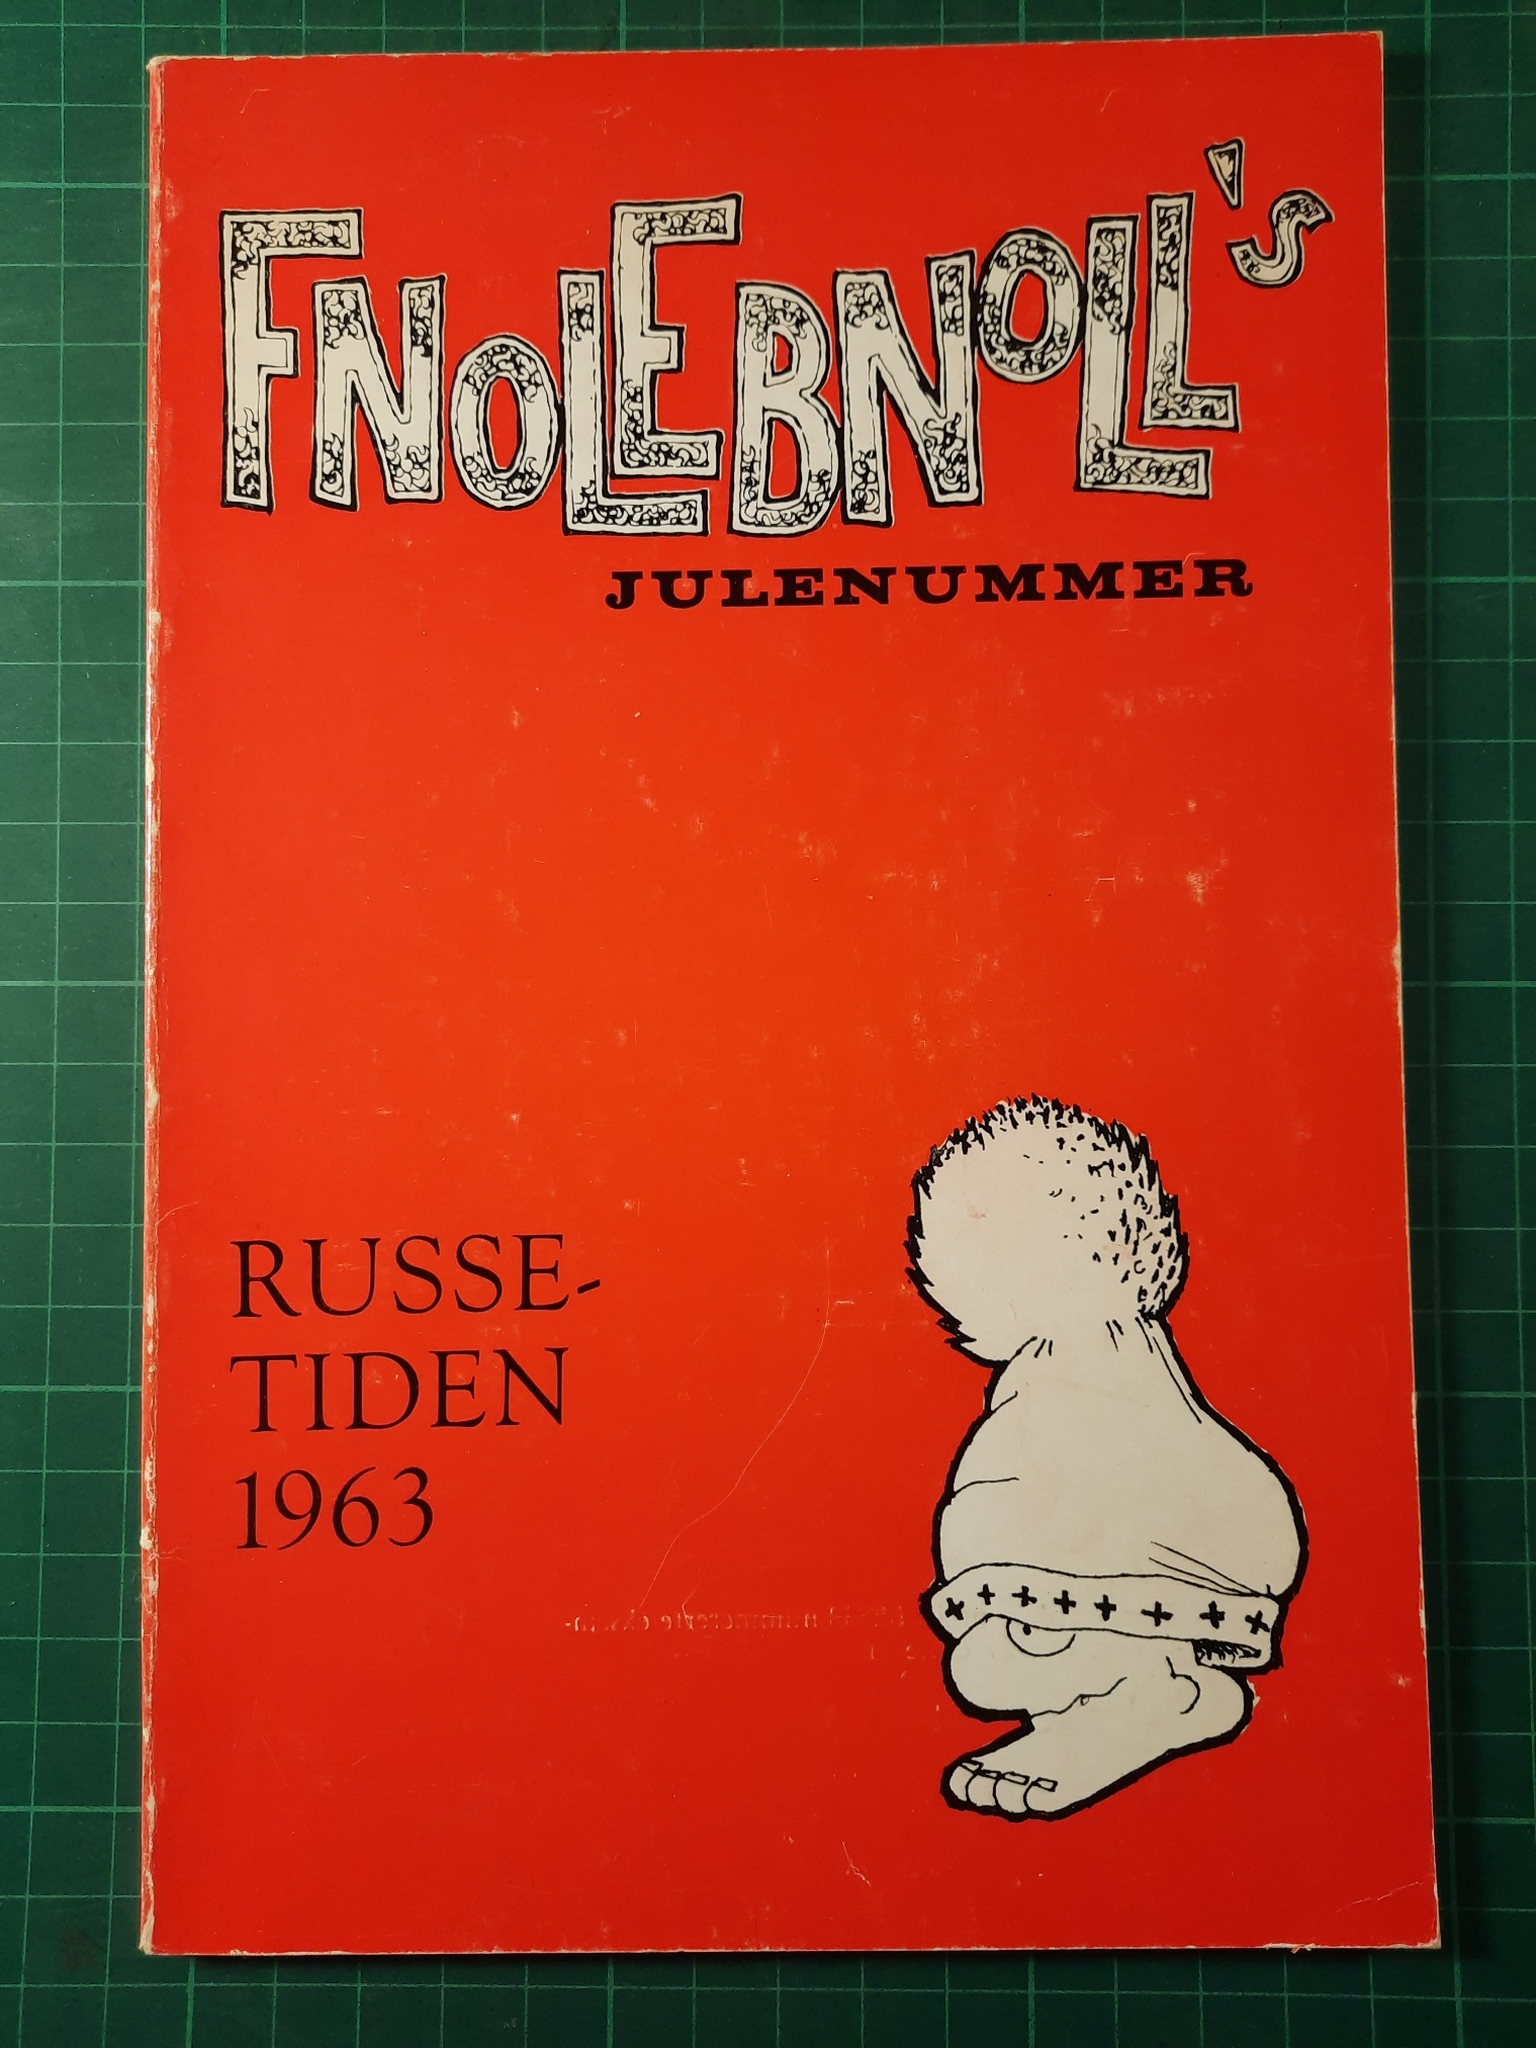 Fnolebnoll's julenummer - Russetiden 1963 (nr 1 av 2238 ex)